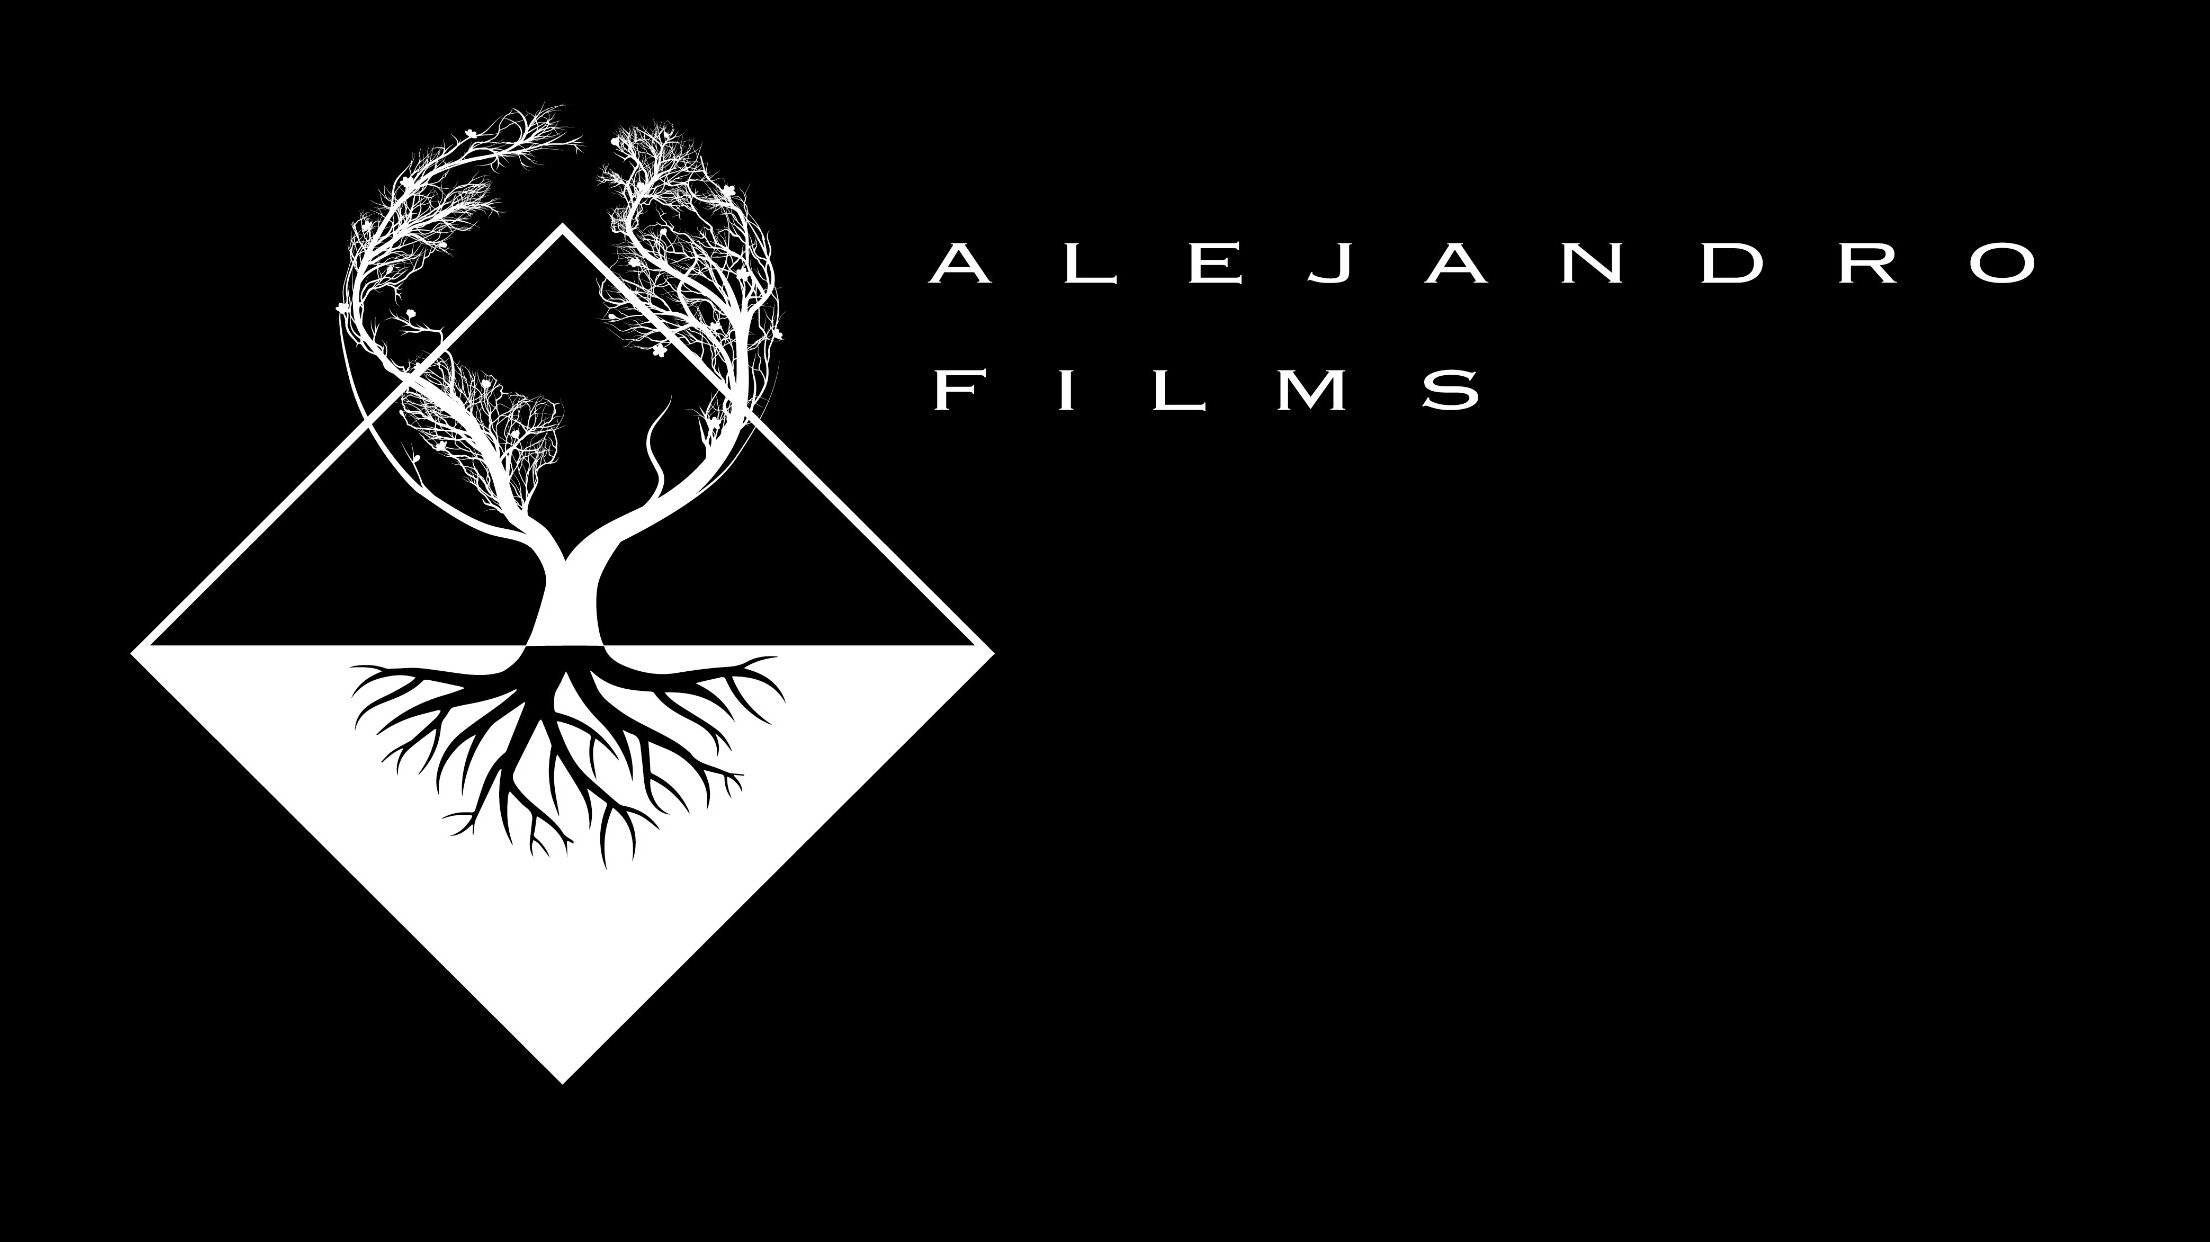 ALEJANDRO FILMS